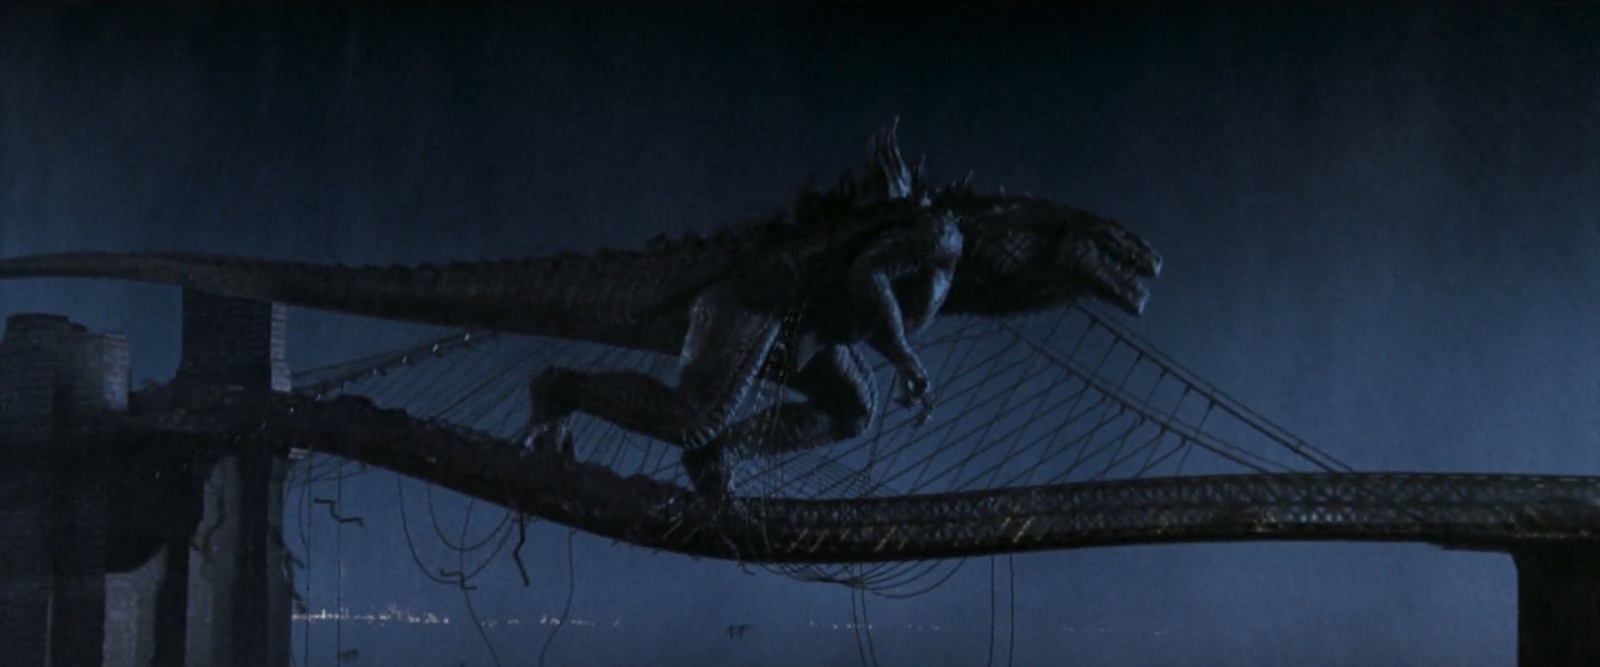 Godzilla |Esp latino|1998|1080p|USA